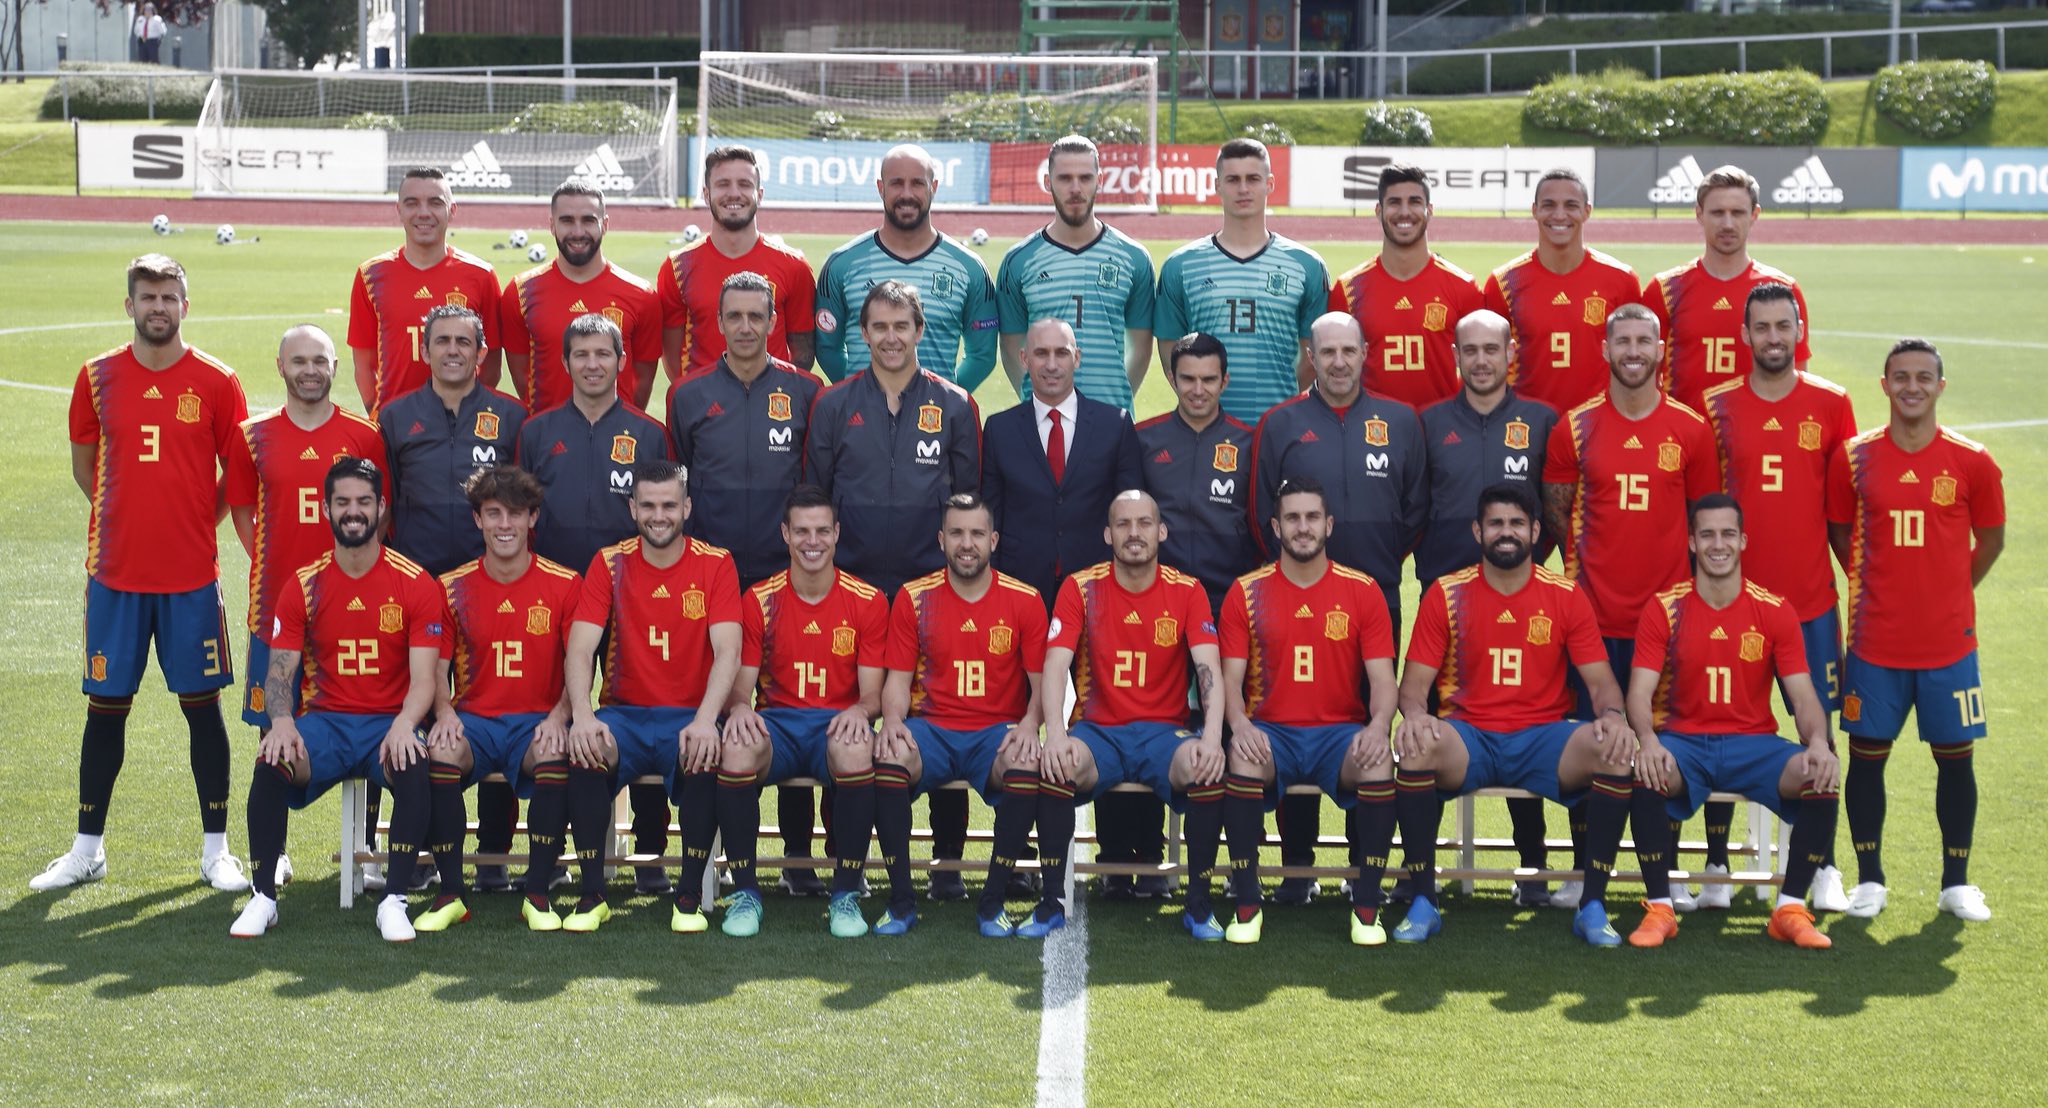 Selección Española de Fútbol on Twitter: "📷 ¡Aquí está! foto cargada de sueños e ilusiones, y con ellos vamos a llenar la que nos llevará a #Rusia2018 si